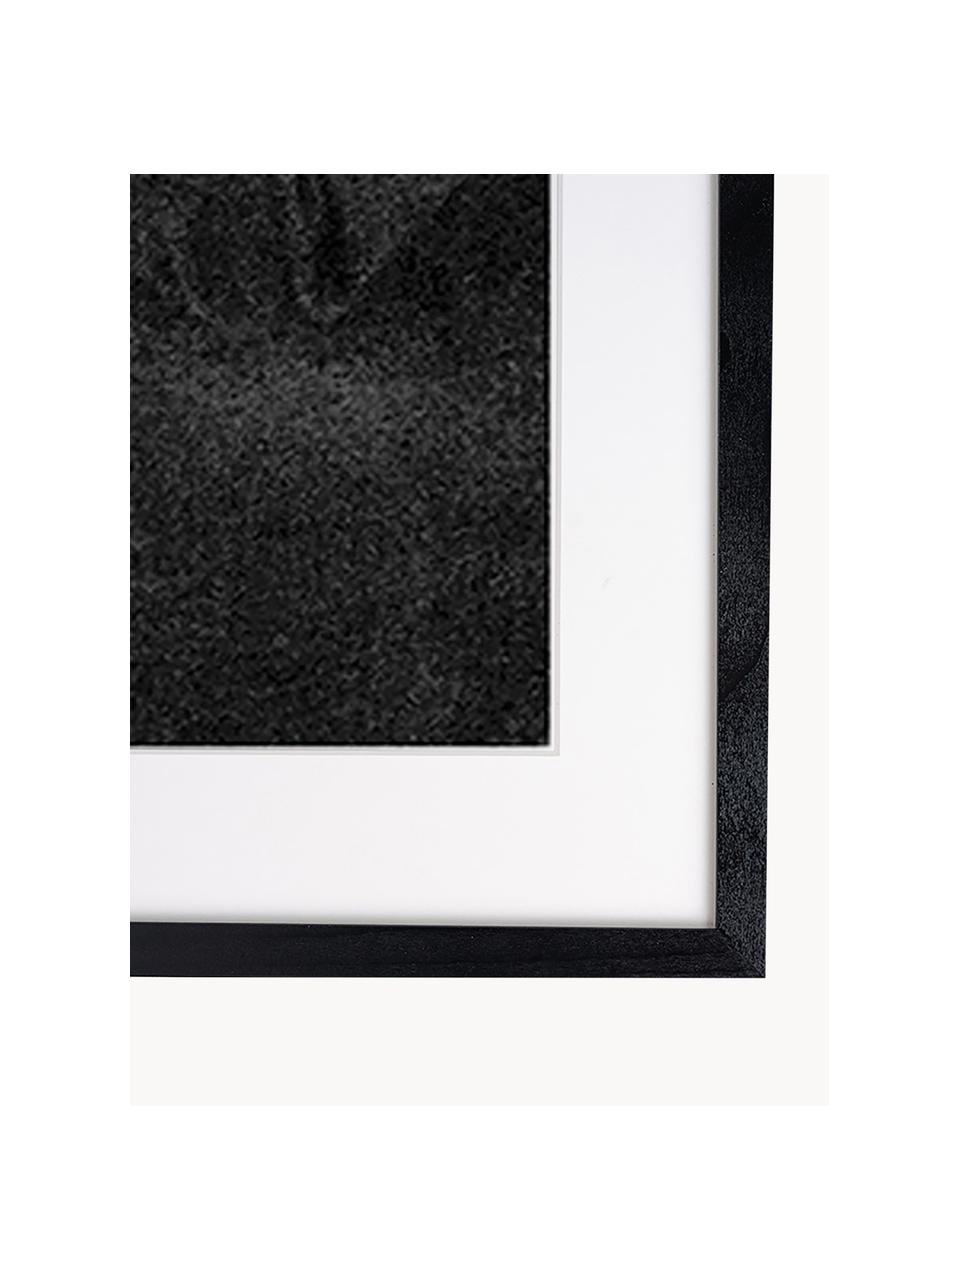 Photographie encadrée James Dean with Camera, Noir, blanc cassé, larg. 33 x haut. 43 cm